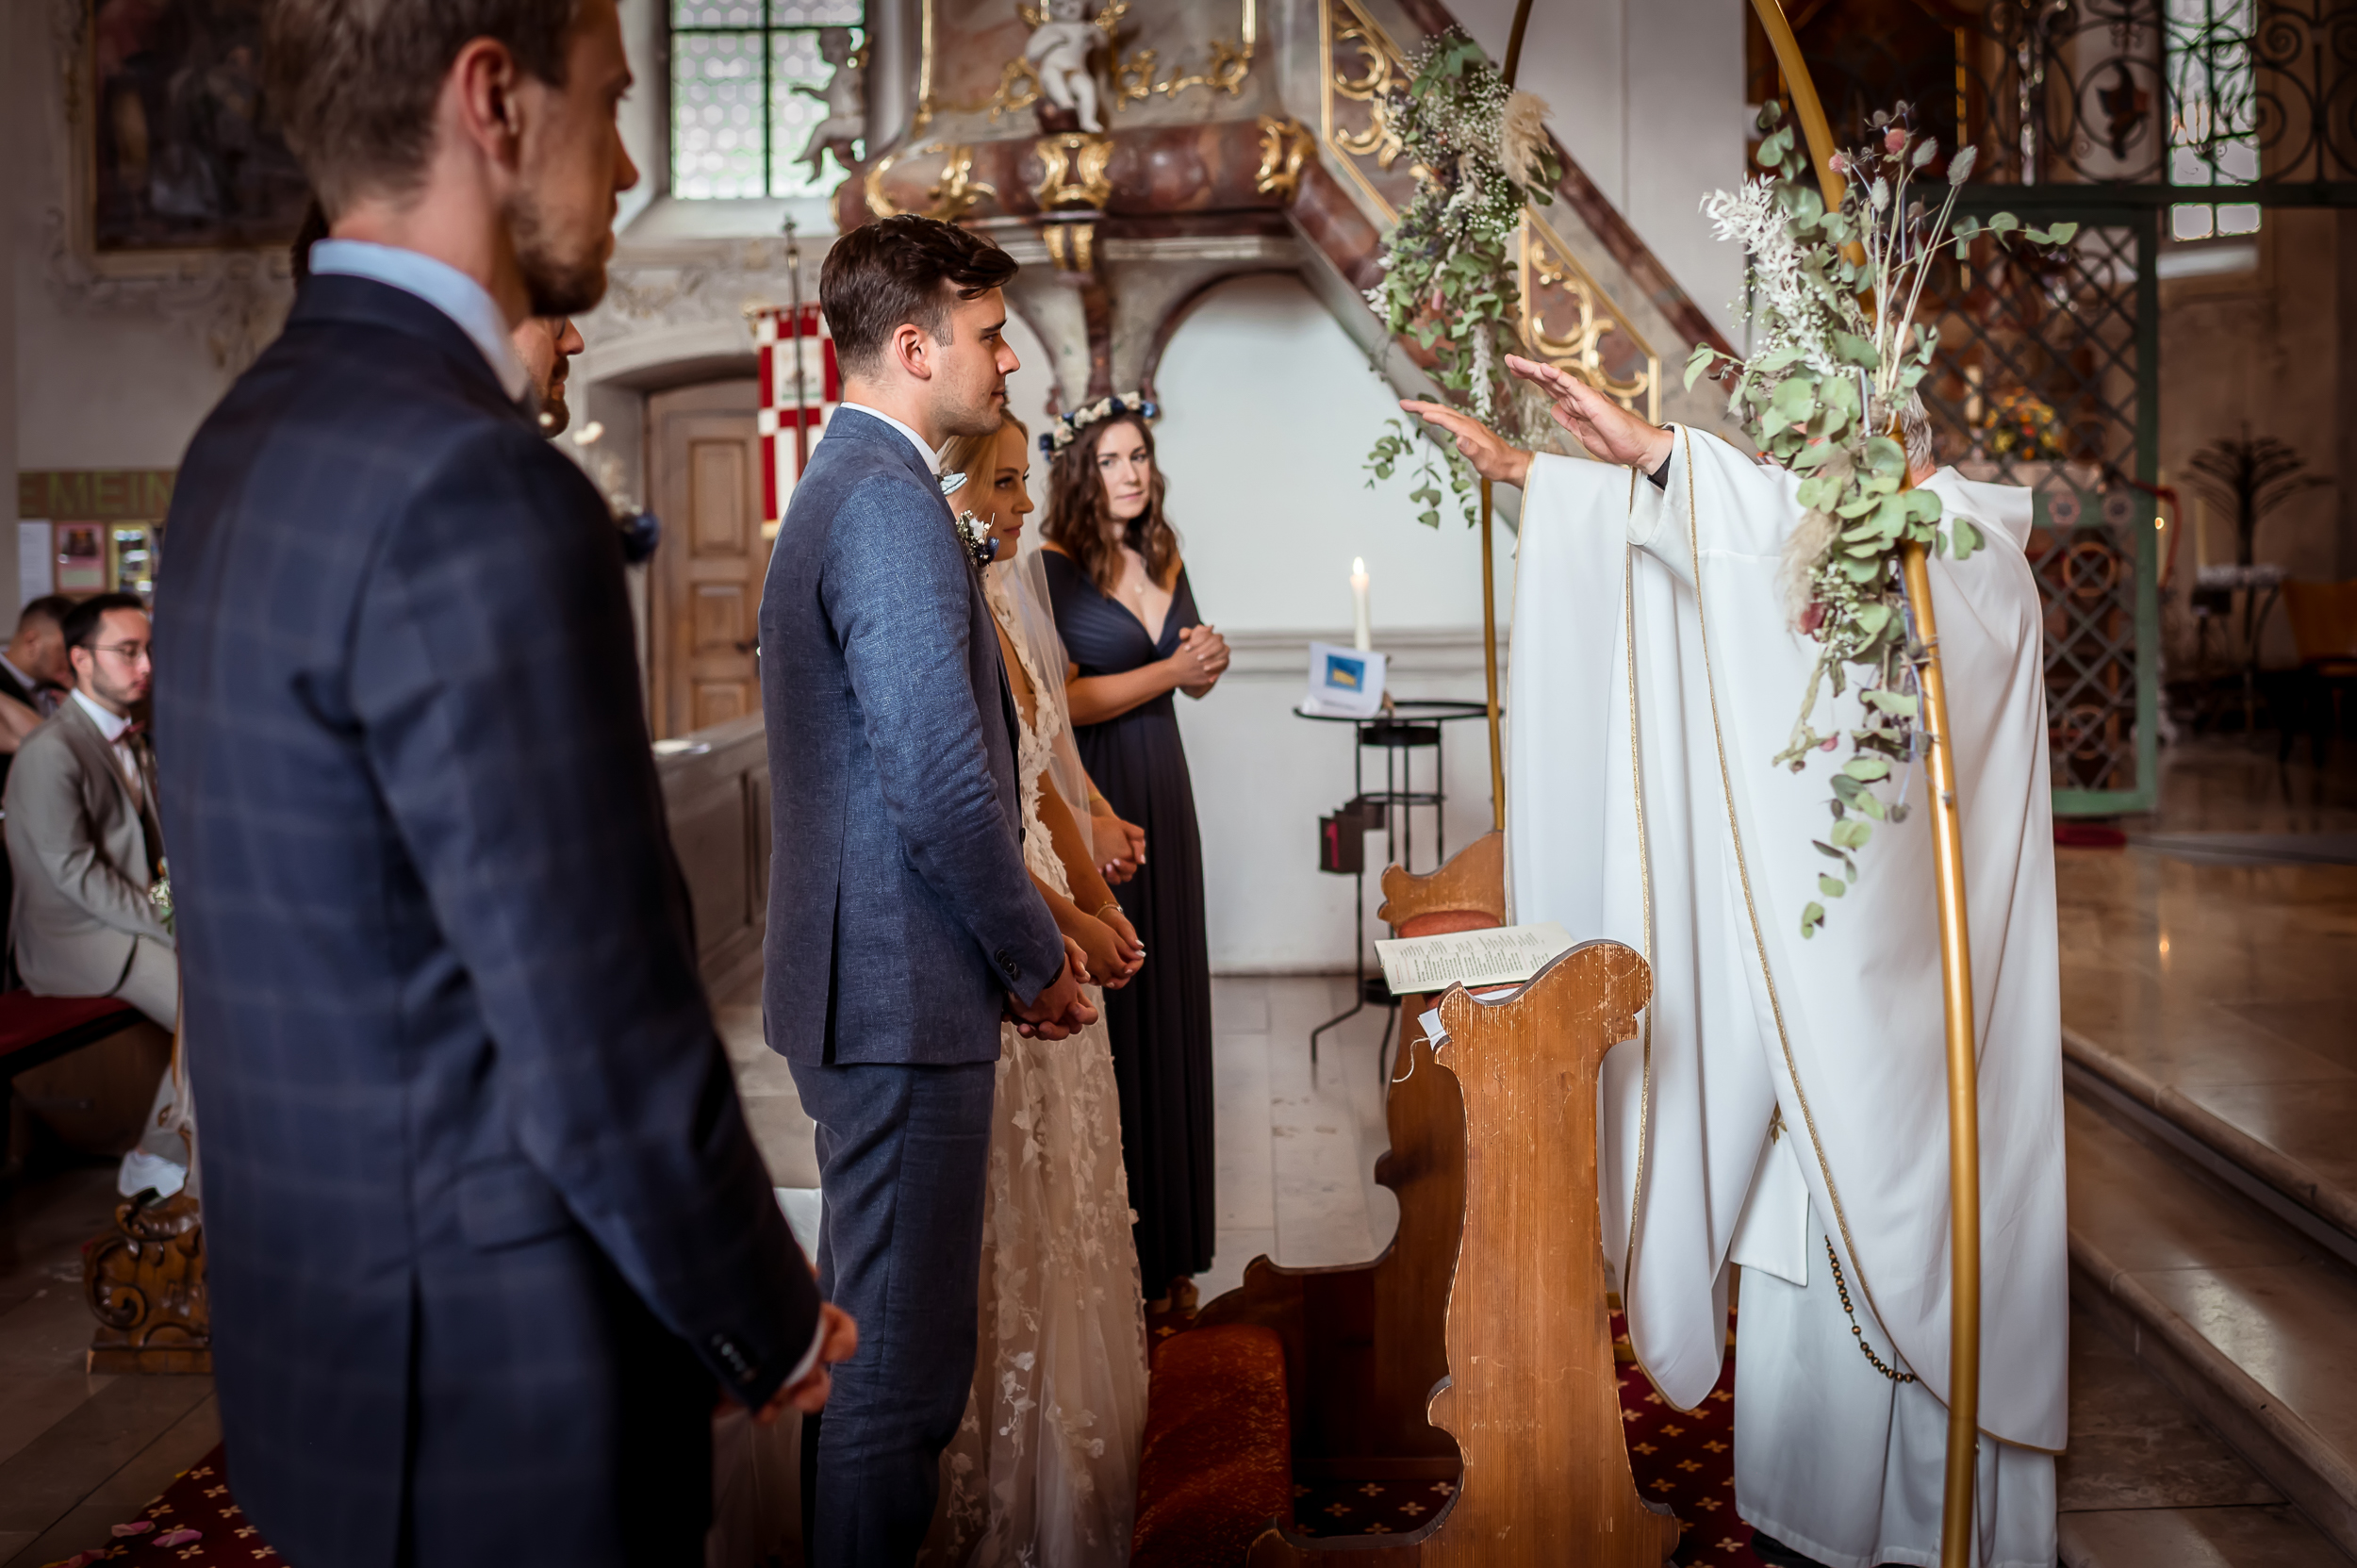 Kirchliche Trauung in einer katholischen Kirche im Schwarzwald, bei der der Pfarrer das Brautpaar neben den Trauzeugen im Altar segnet.